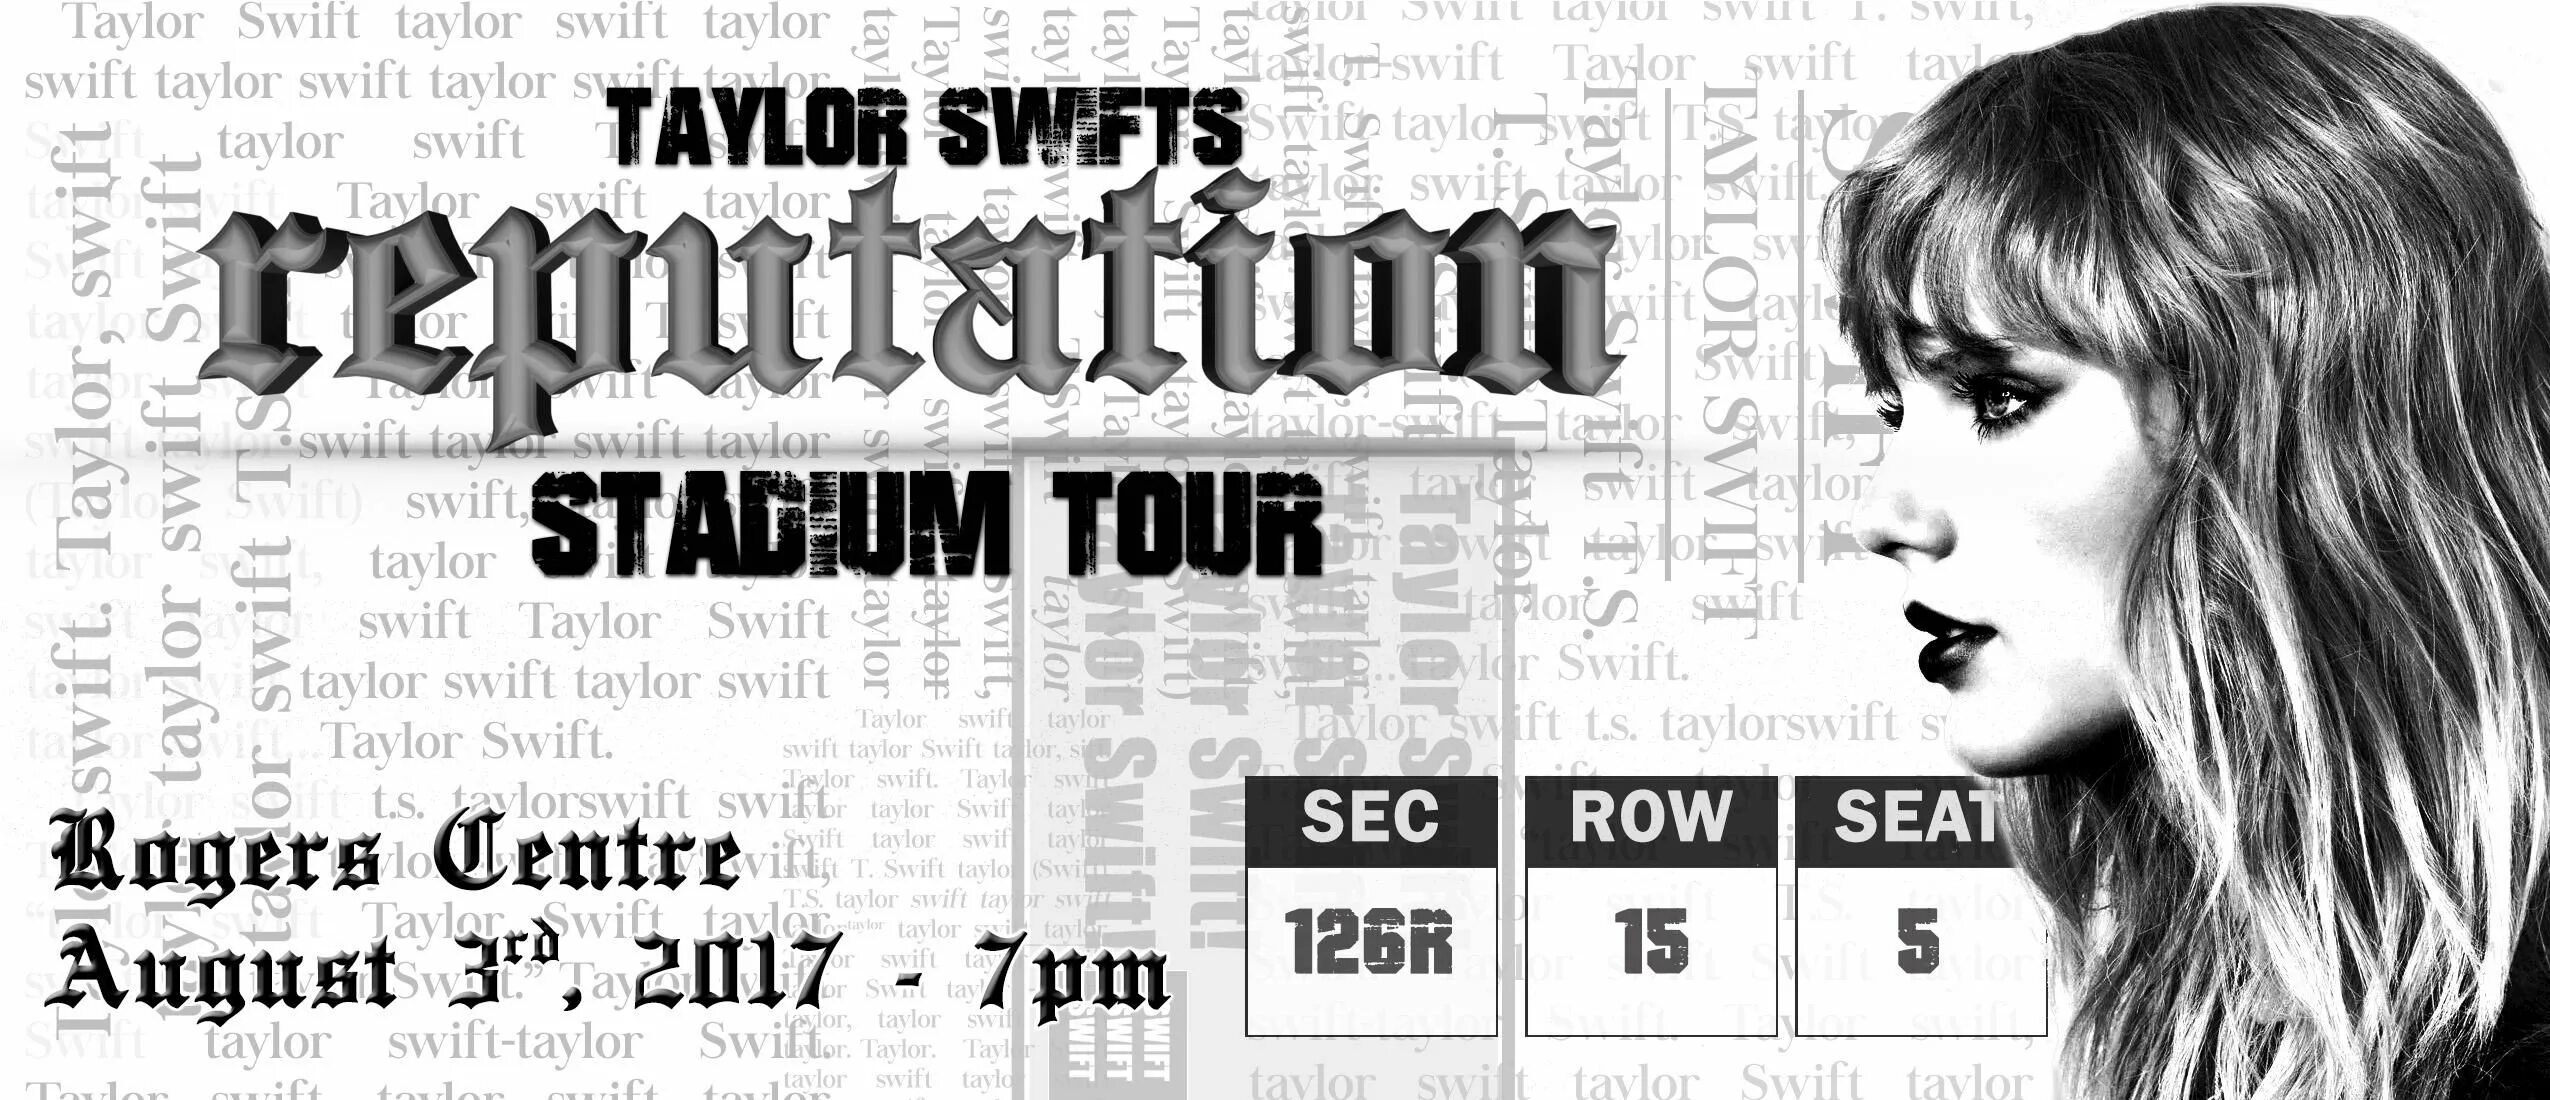 Taylor Swift reputation обложка. Билет на концерт Тейлор Свифт. Тейлор Свифт плакат. Тейлор Свифт reputation. Тейлор свифт билеты